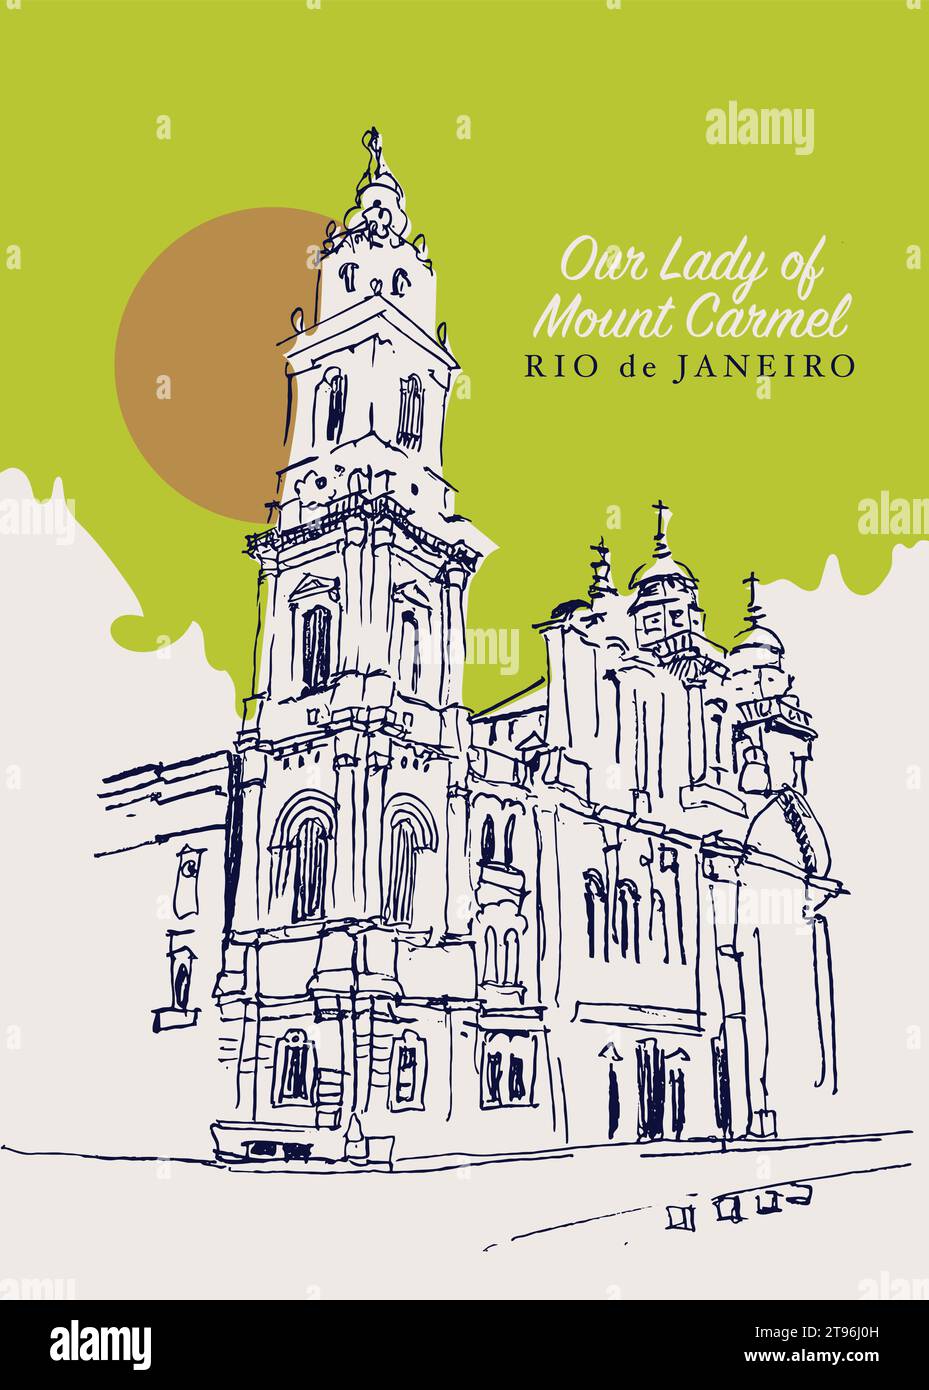 Disegno vettoriale disegnato a mano della cattedrale di nostra Signora del Monte Carmelo a Rio de Janeiro, Brasile. Illustrazione Vettoriale